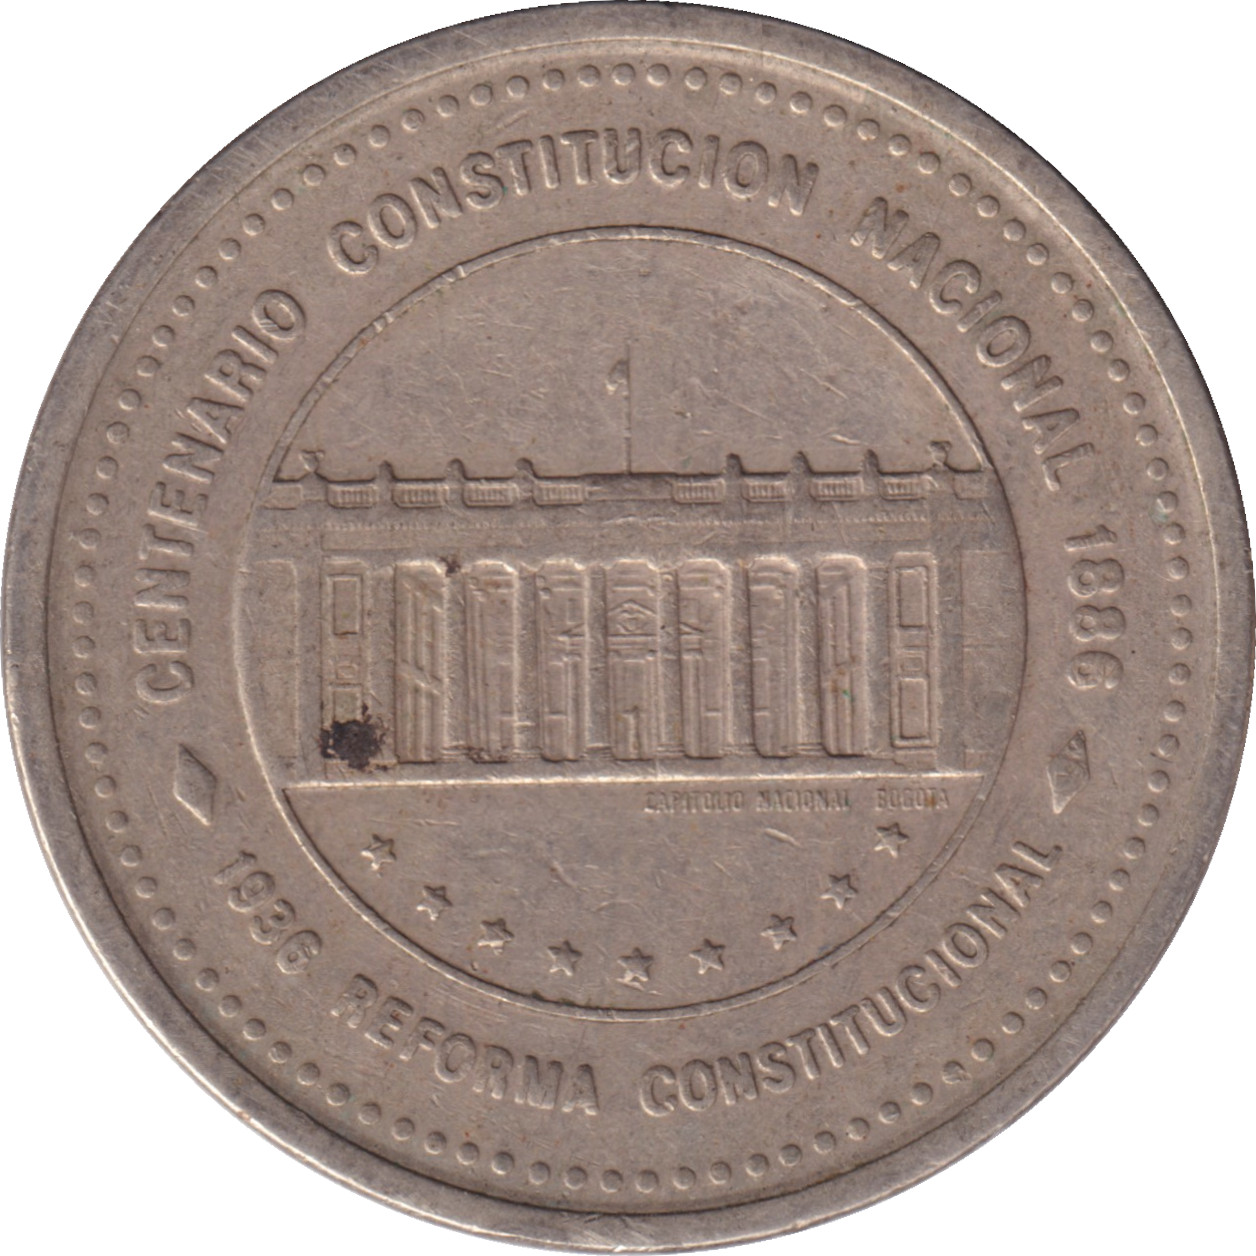 50 pesos - Constitution